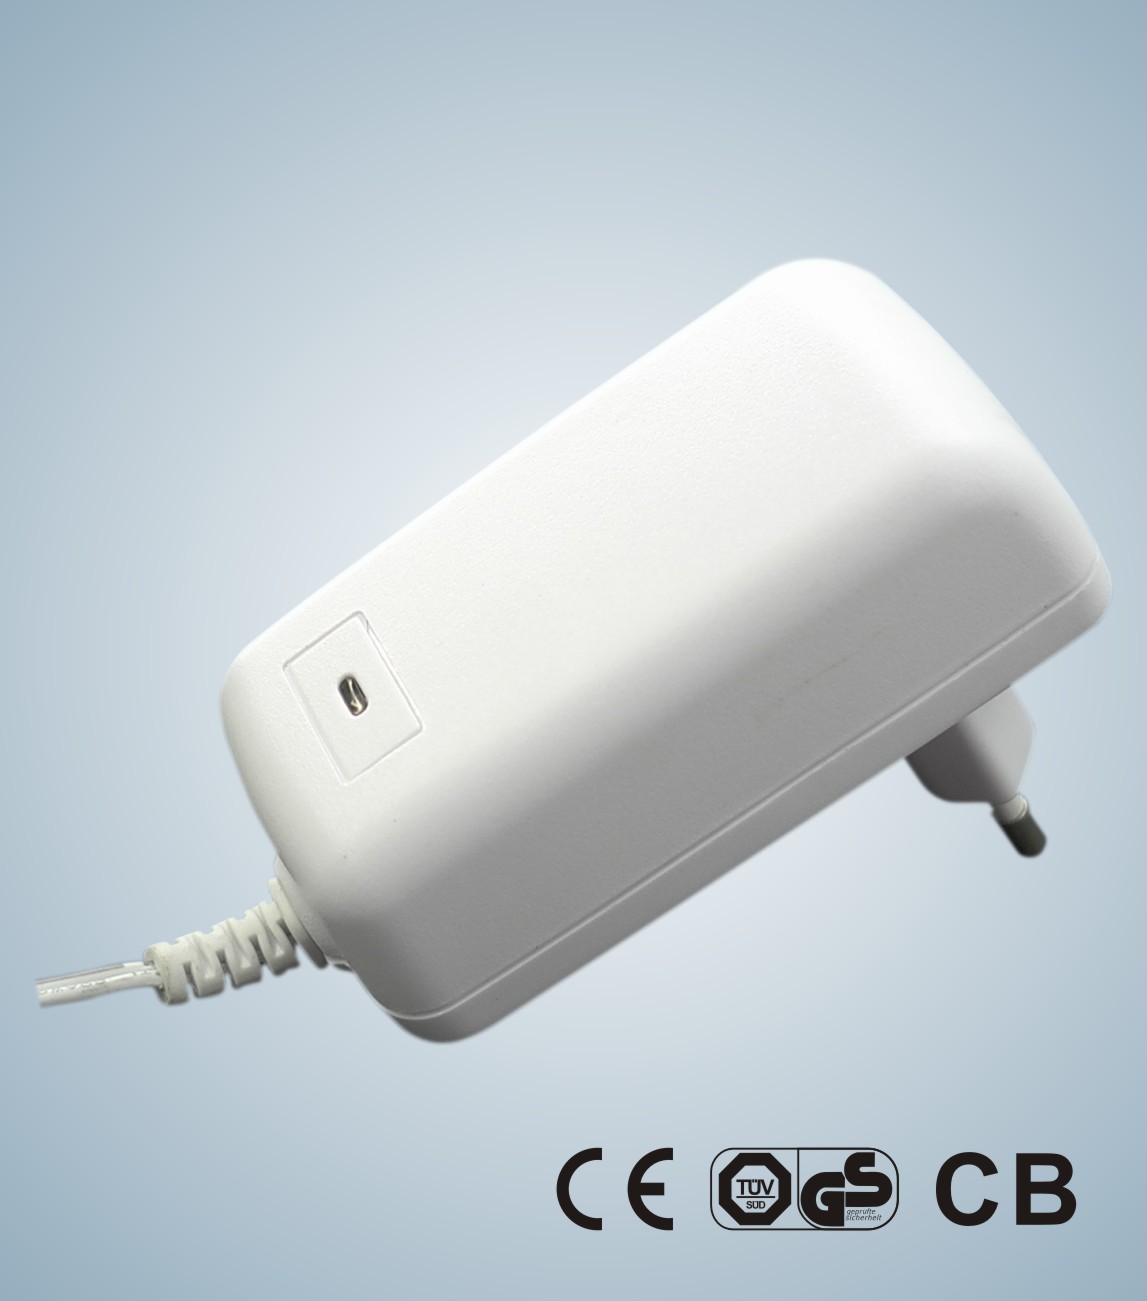 Schaltleistungs-Adapter 20W KSAP020xxxyyyyHEC mit COLUMBIUM 12VDC 0.1-2A, CER, GS-Sicherheits-Zustimmung für allgemeinen I.T.E-Gebrauch